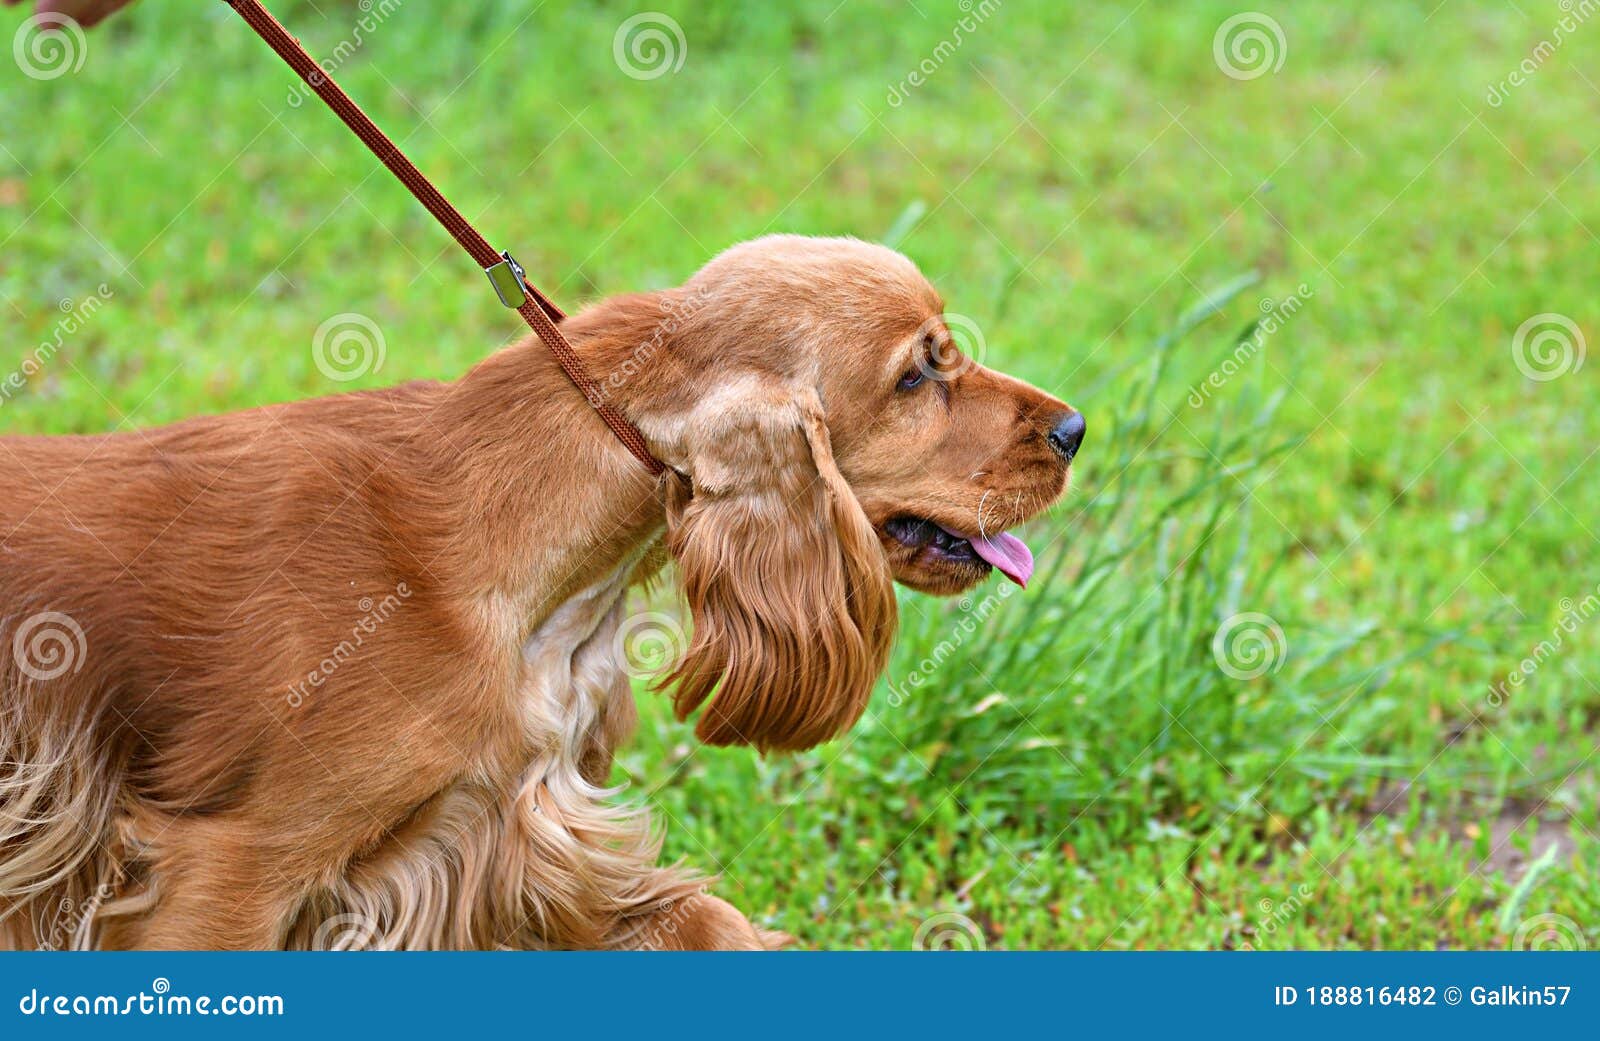 english cocker spaniel hunting dog